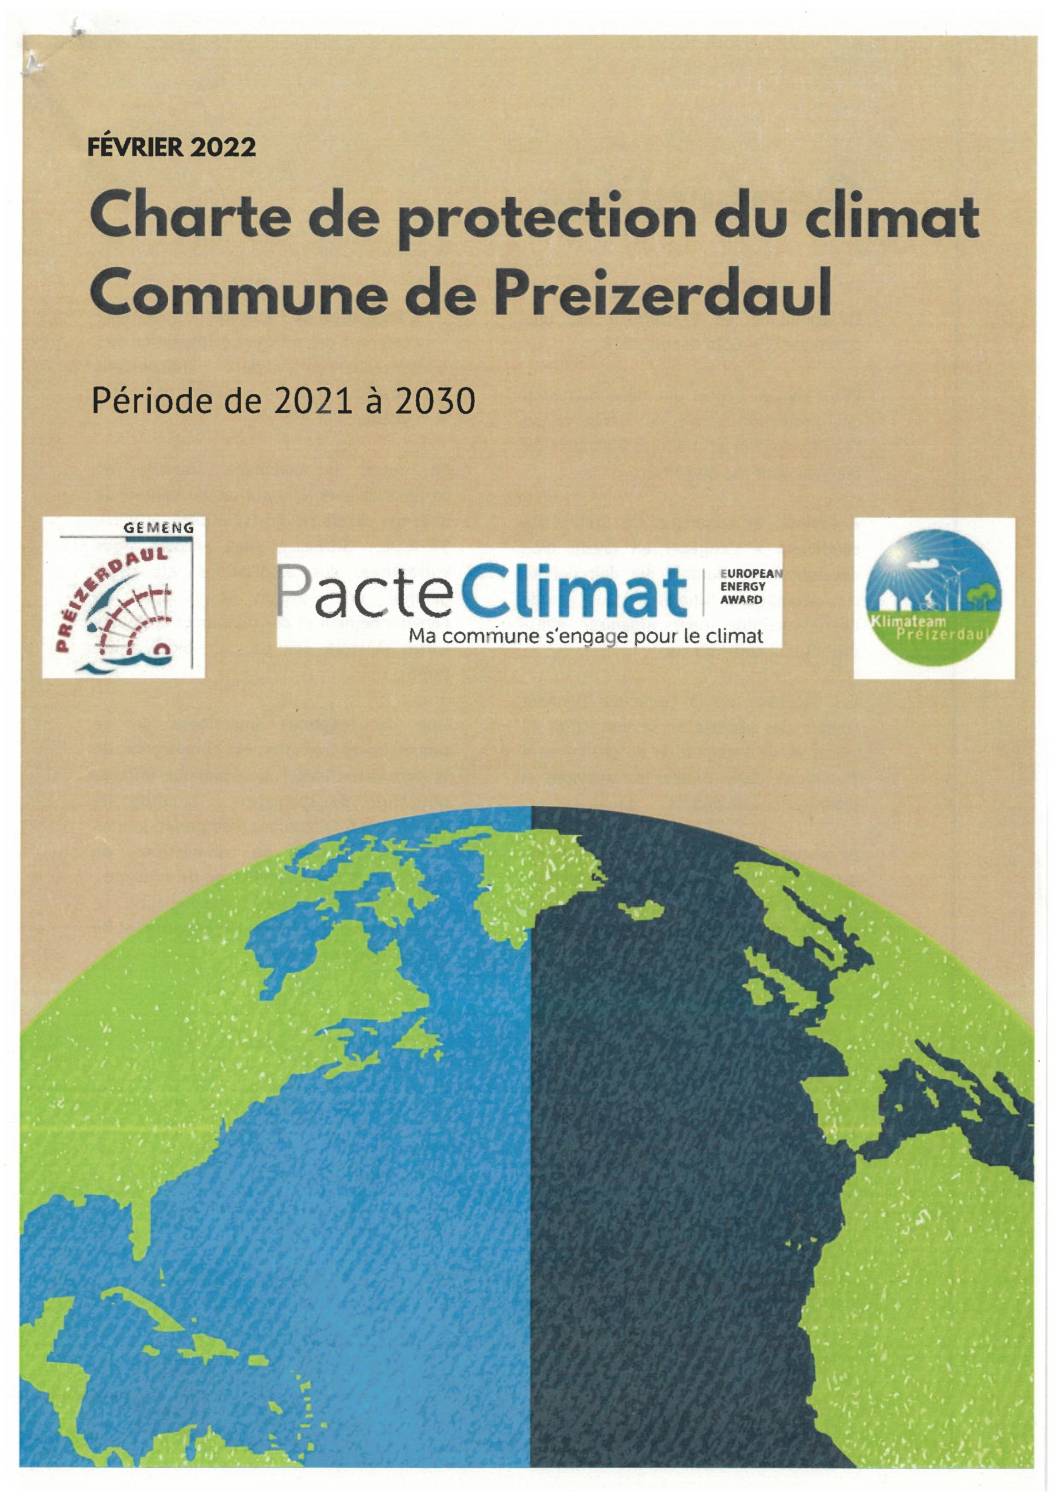 charte_de_protection_climat_Préizerdaul_2030